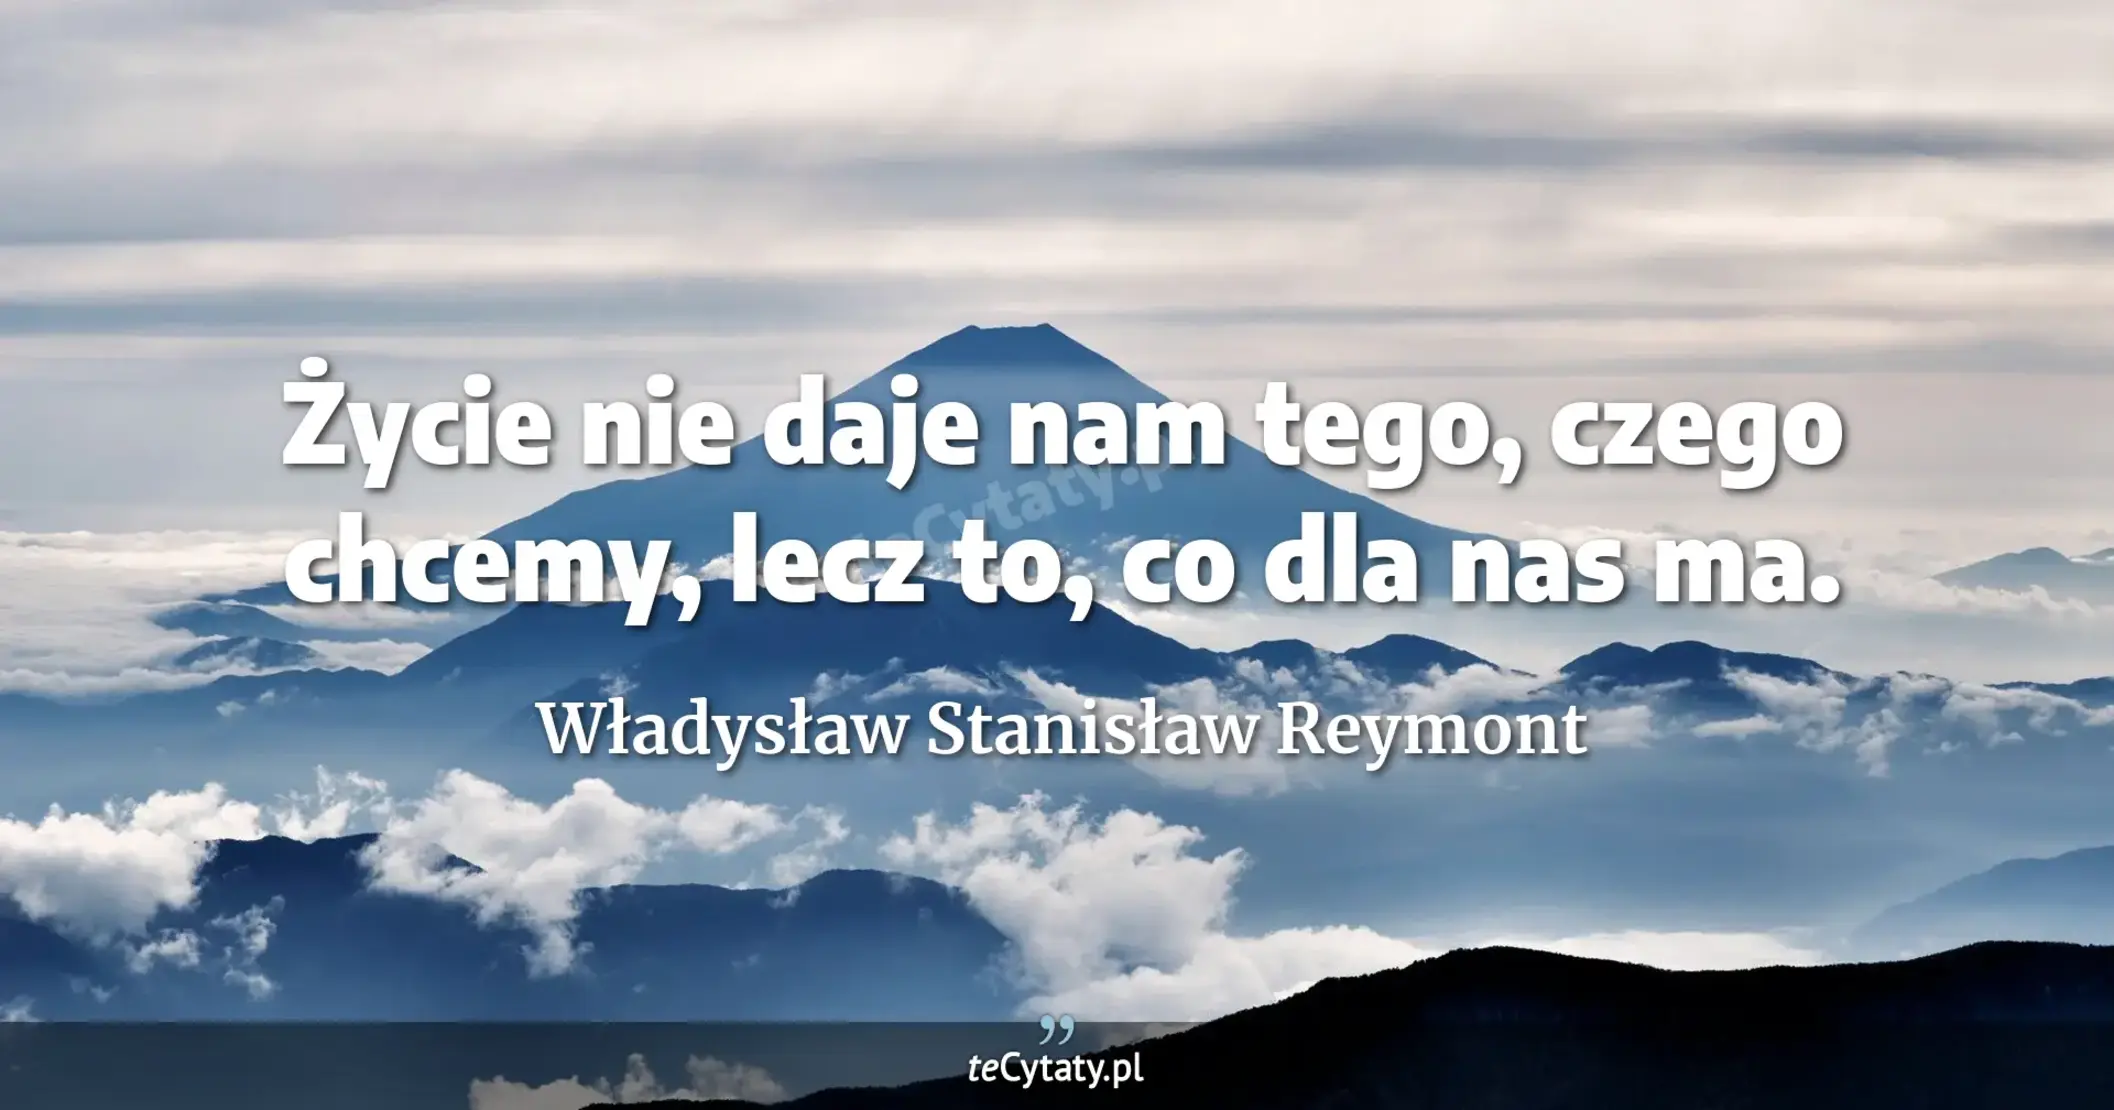 Życie nie daje nam tego, czego chcemy, lecz to, co dla nas ma. - Władysław Stanisław Reymont